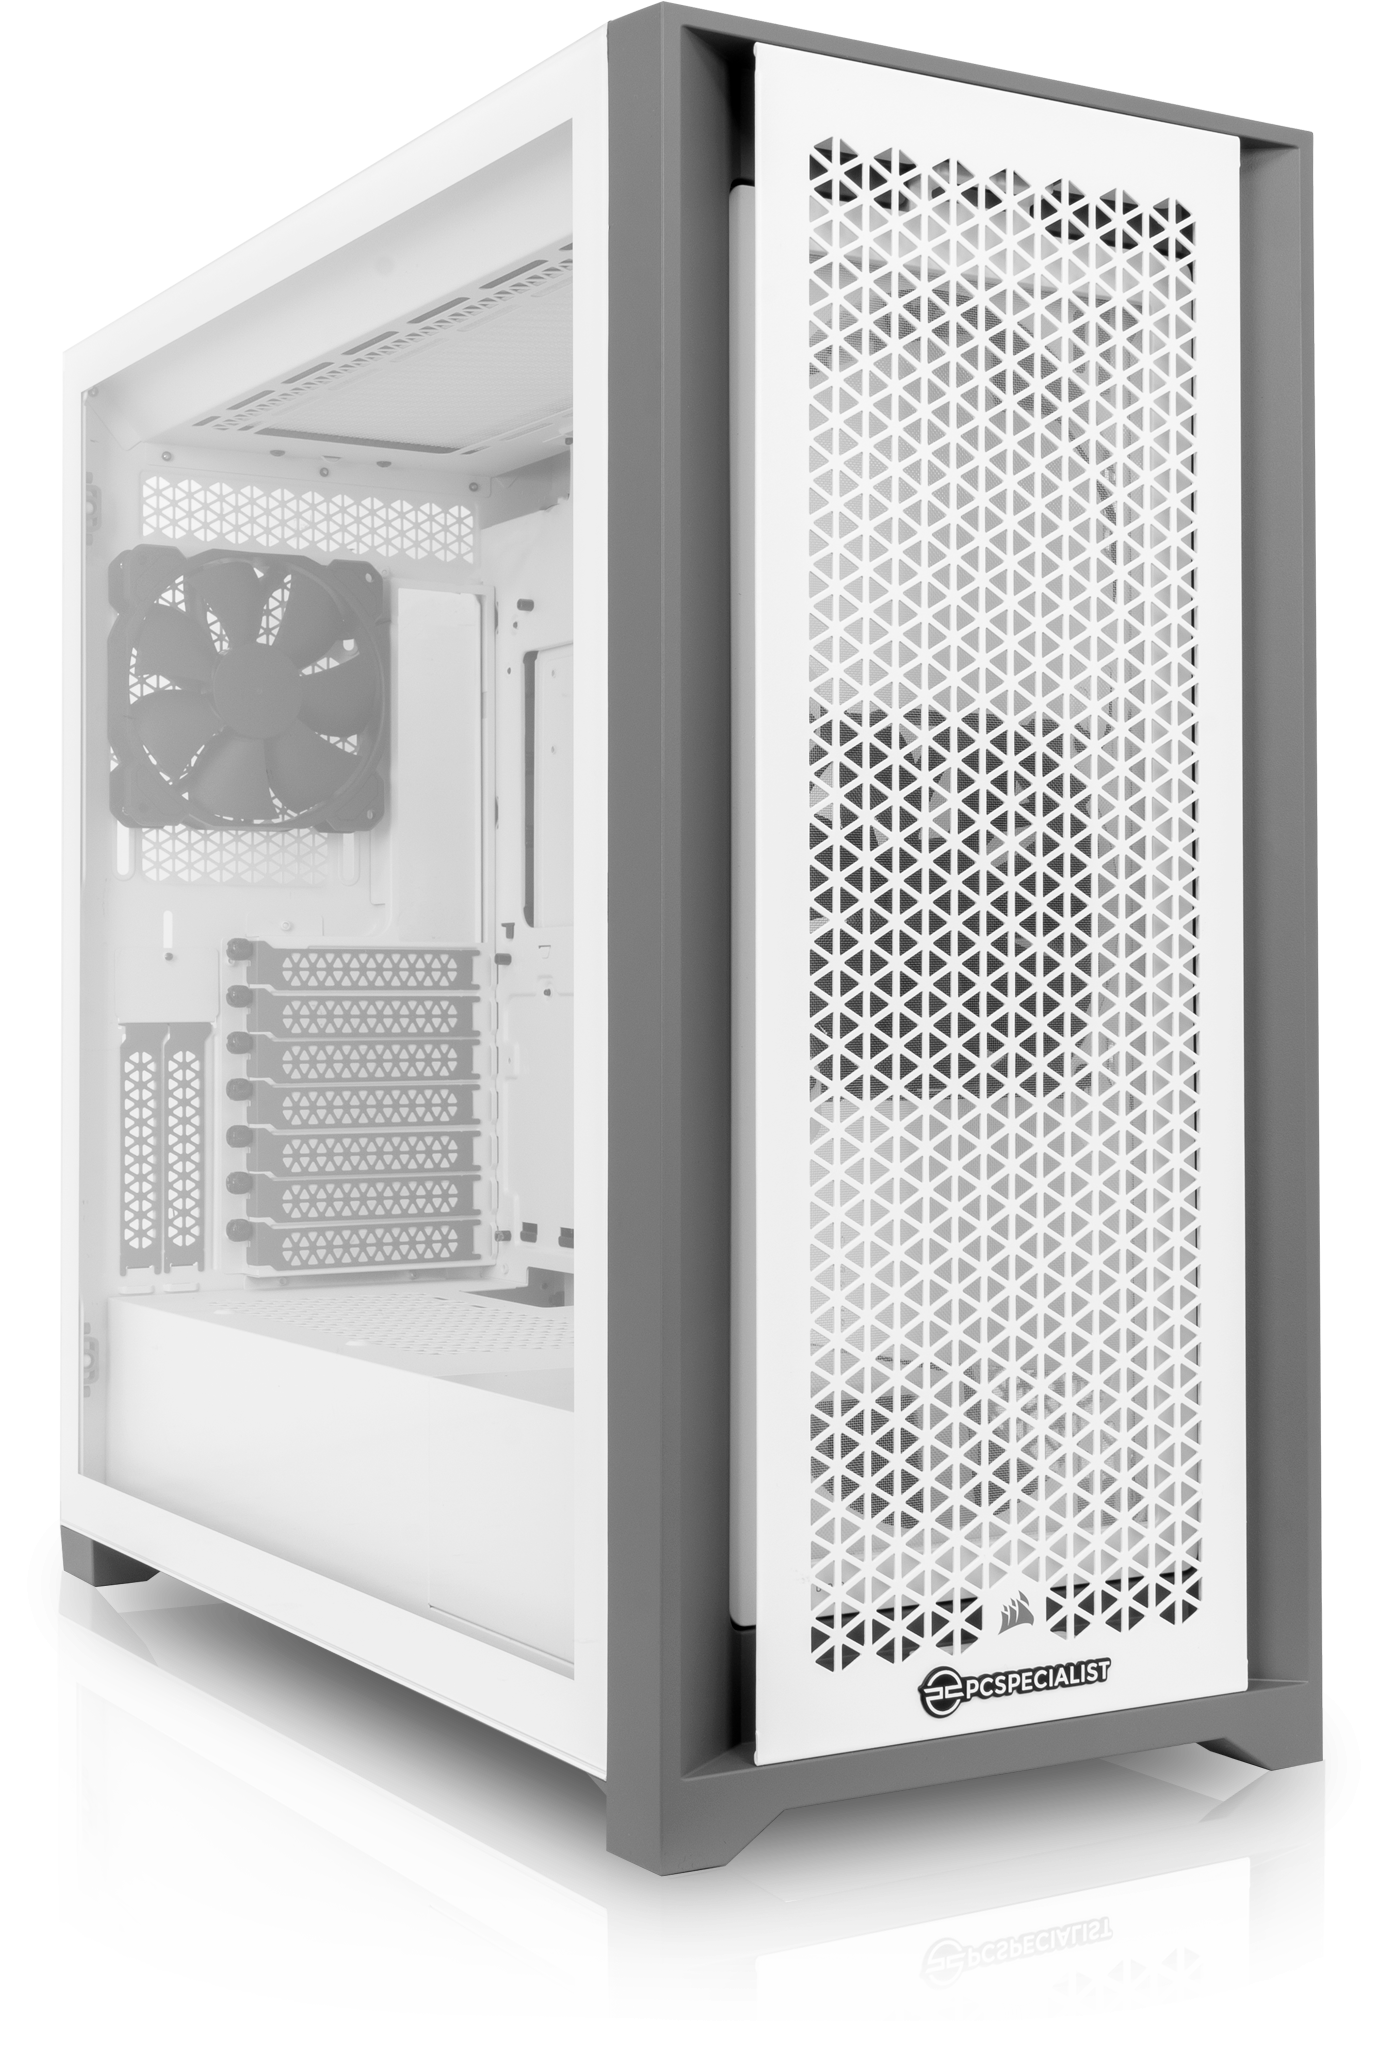 PCSPECIALIST - NVIDIA GeForce RTX™ Série 3060